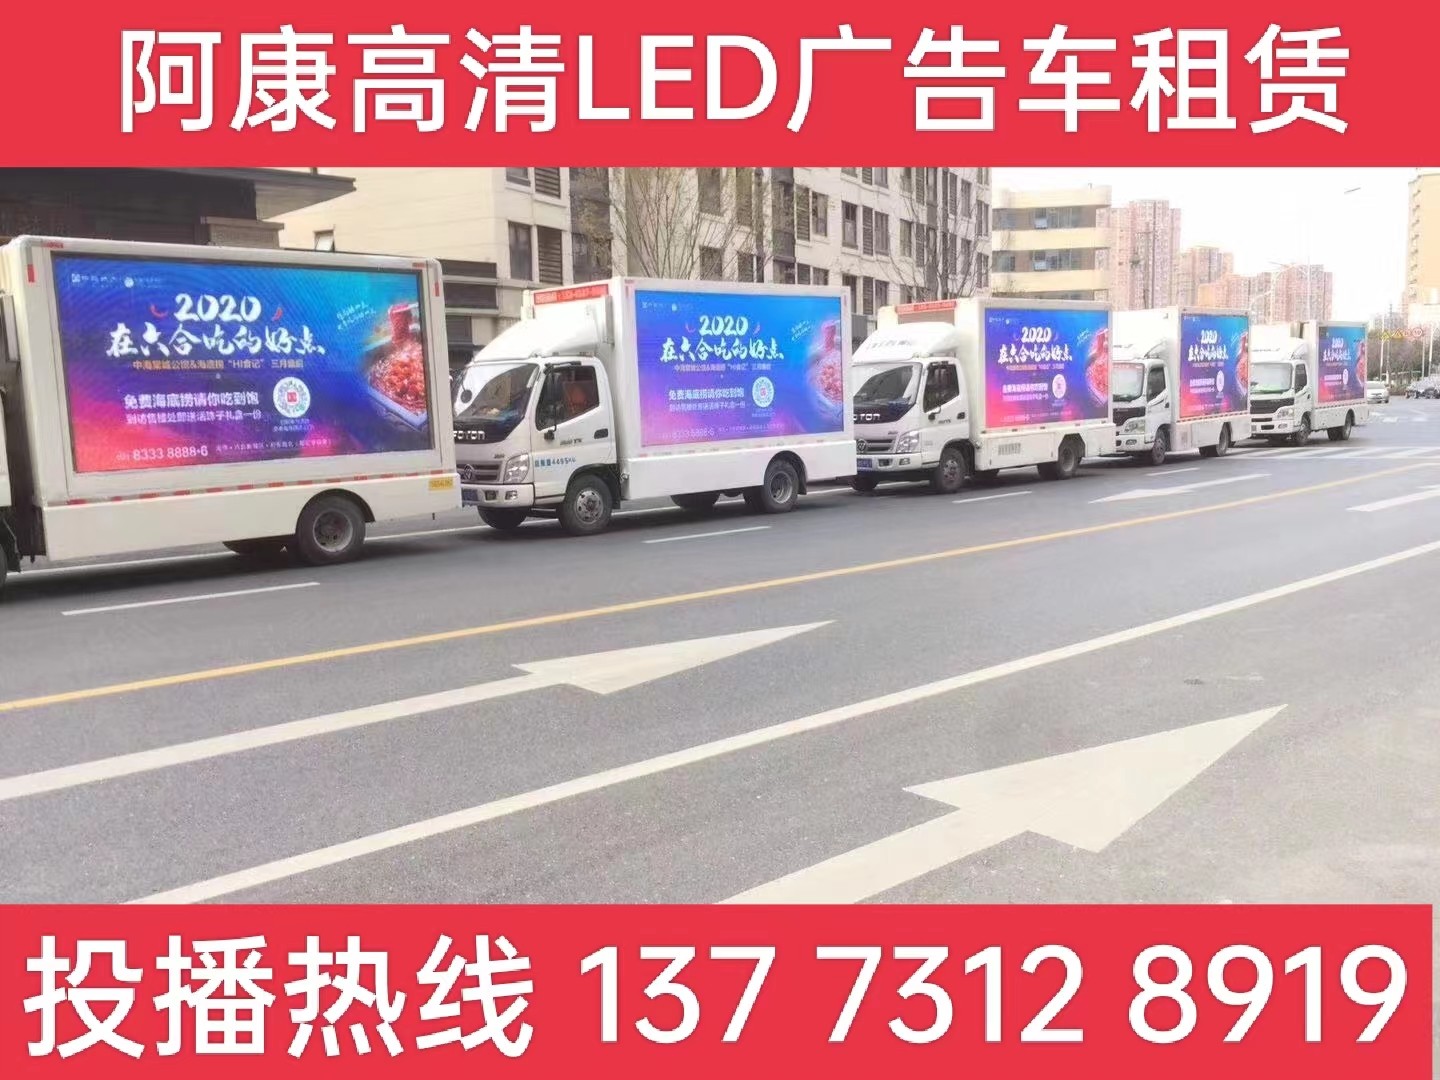 德清县宣传车出租-海底捞LED广告